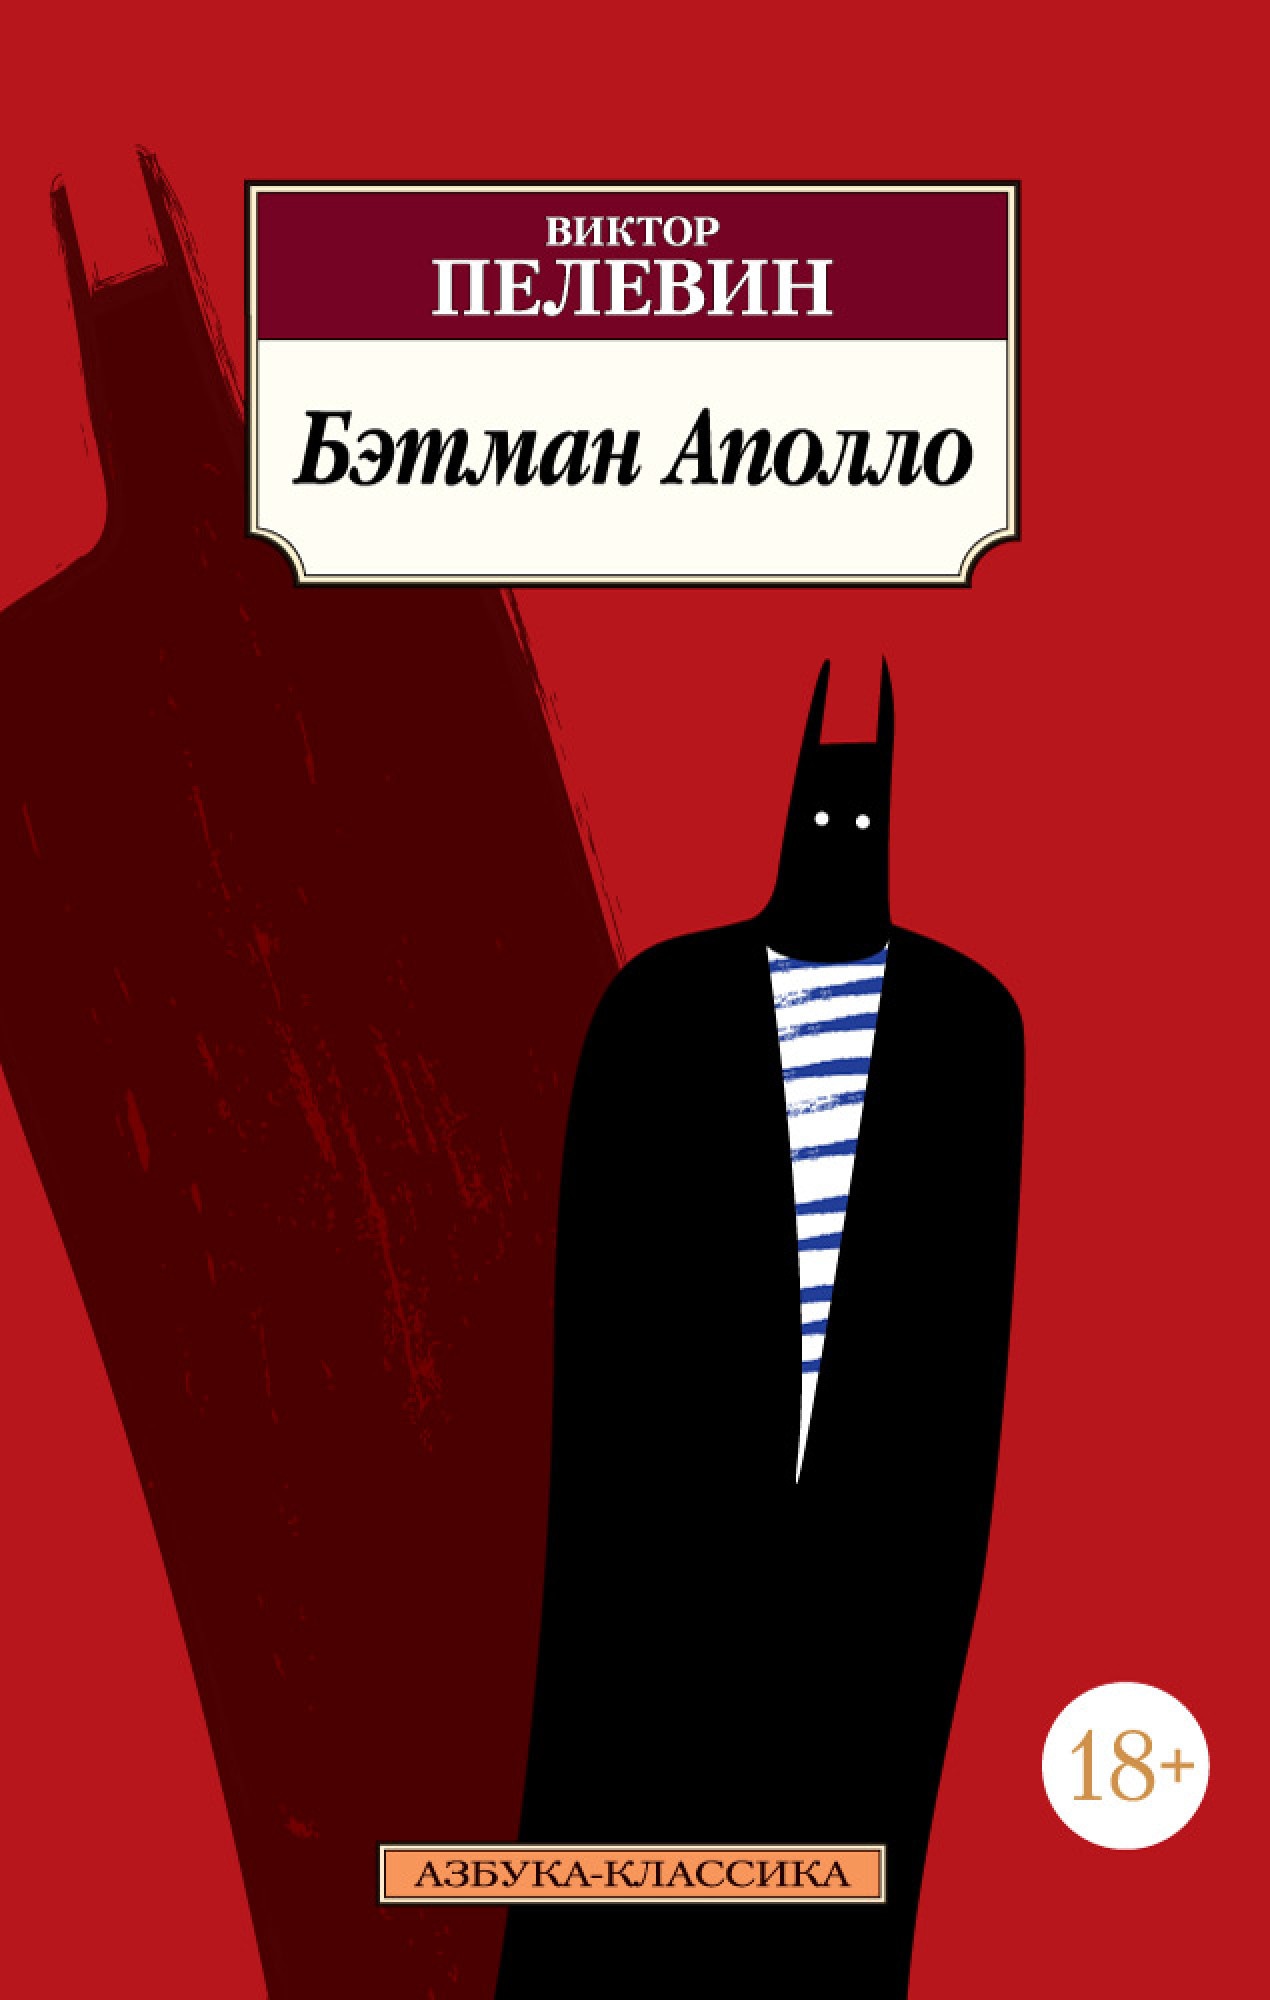 Книга «Бэтман Аполло» Виктор Пелевин — 2020 г.